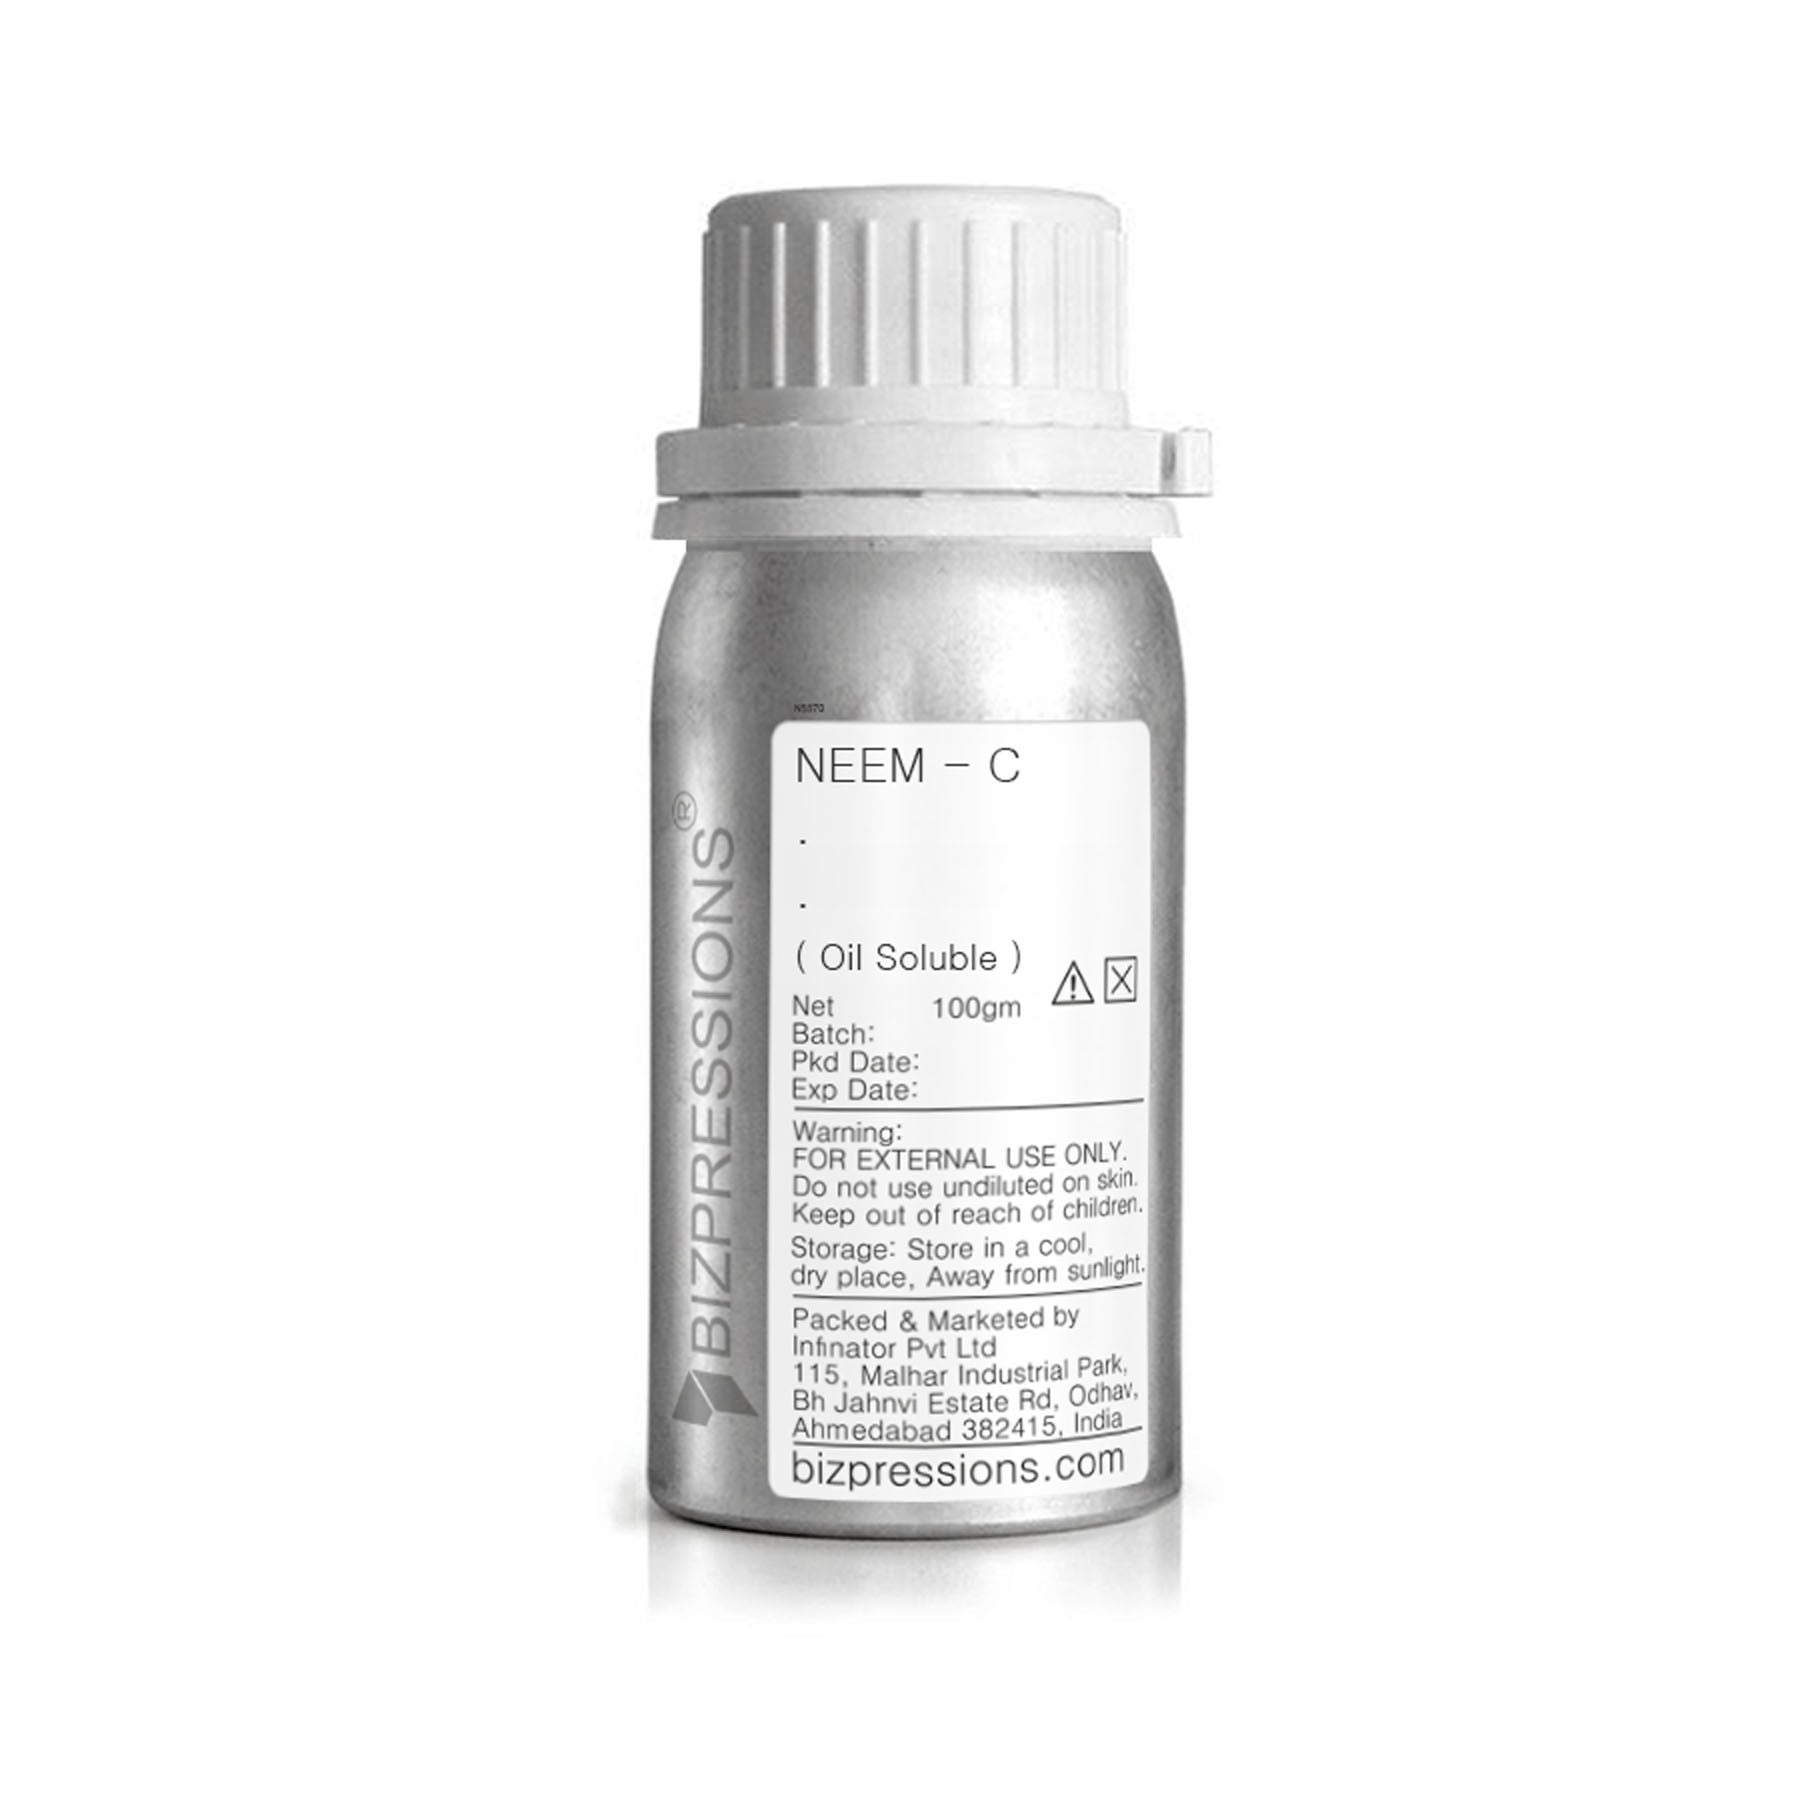 NEEM - C - Fragrance ( Oil Soluble ) - 100 gm